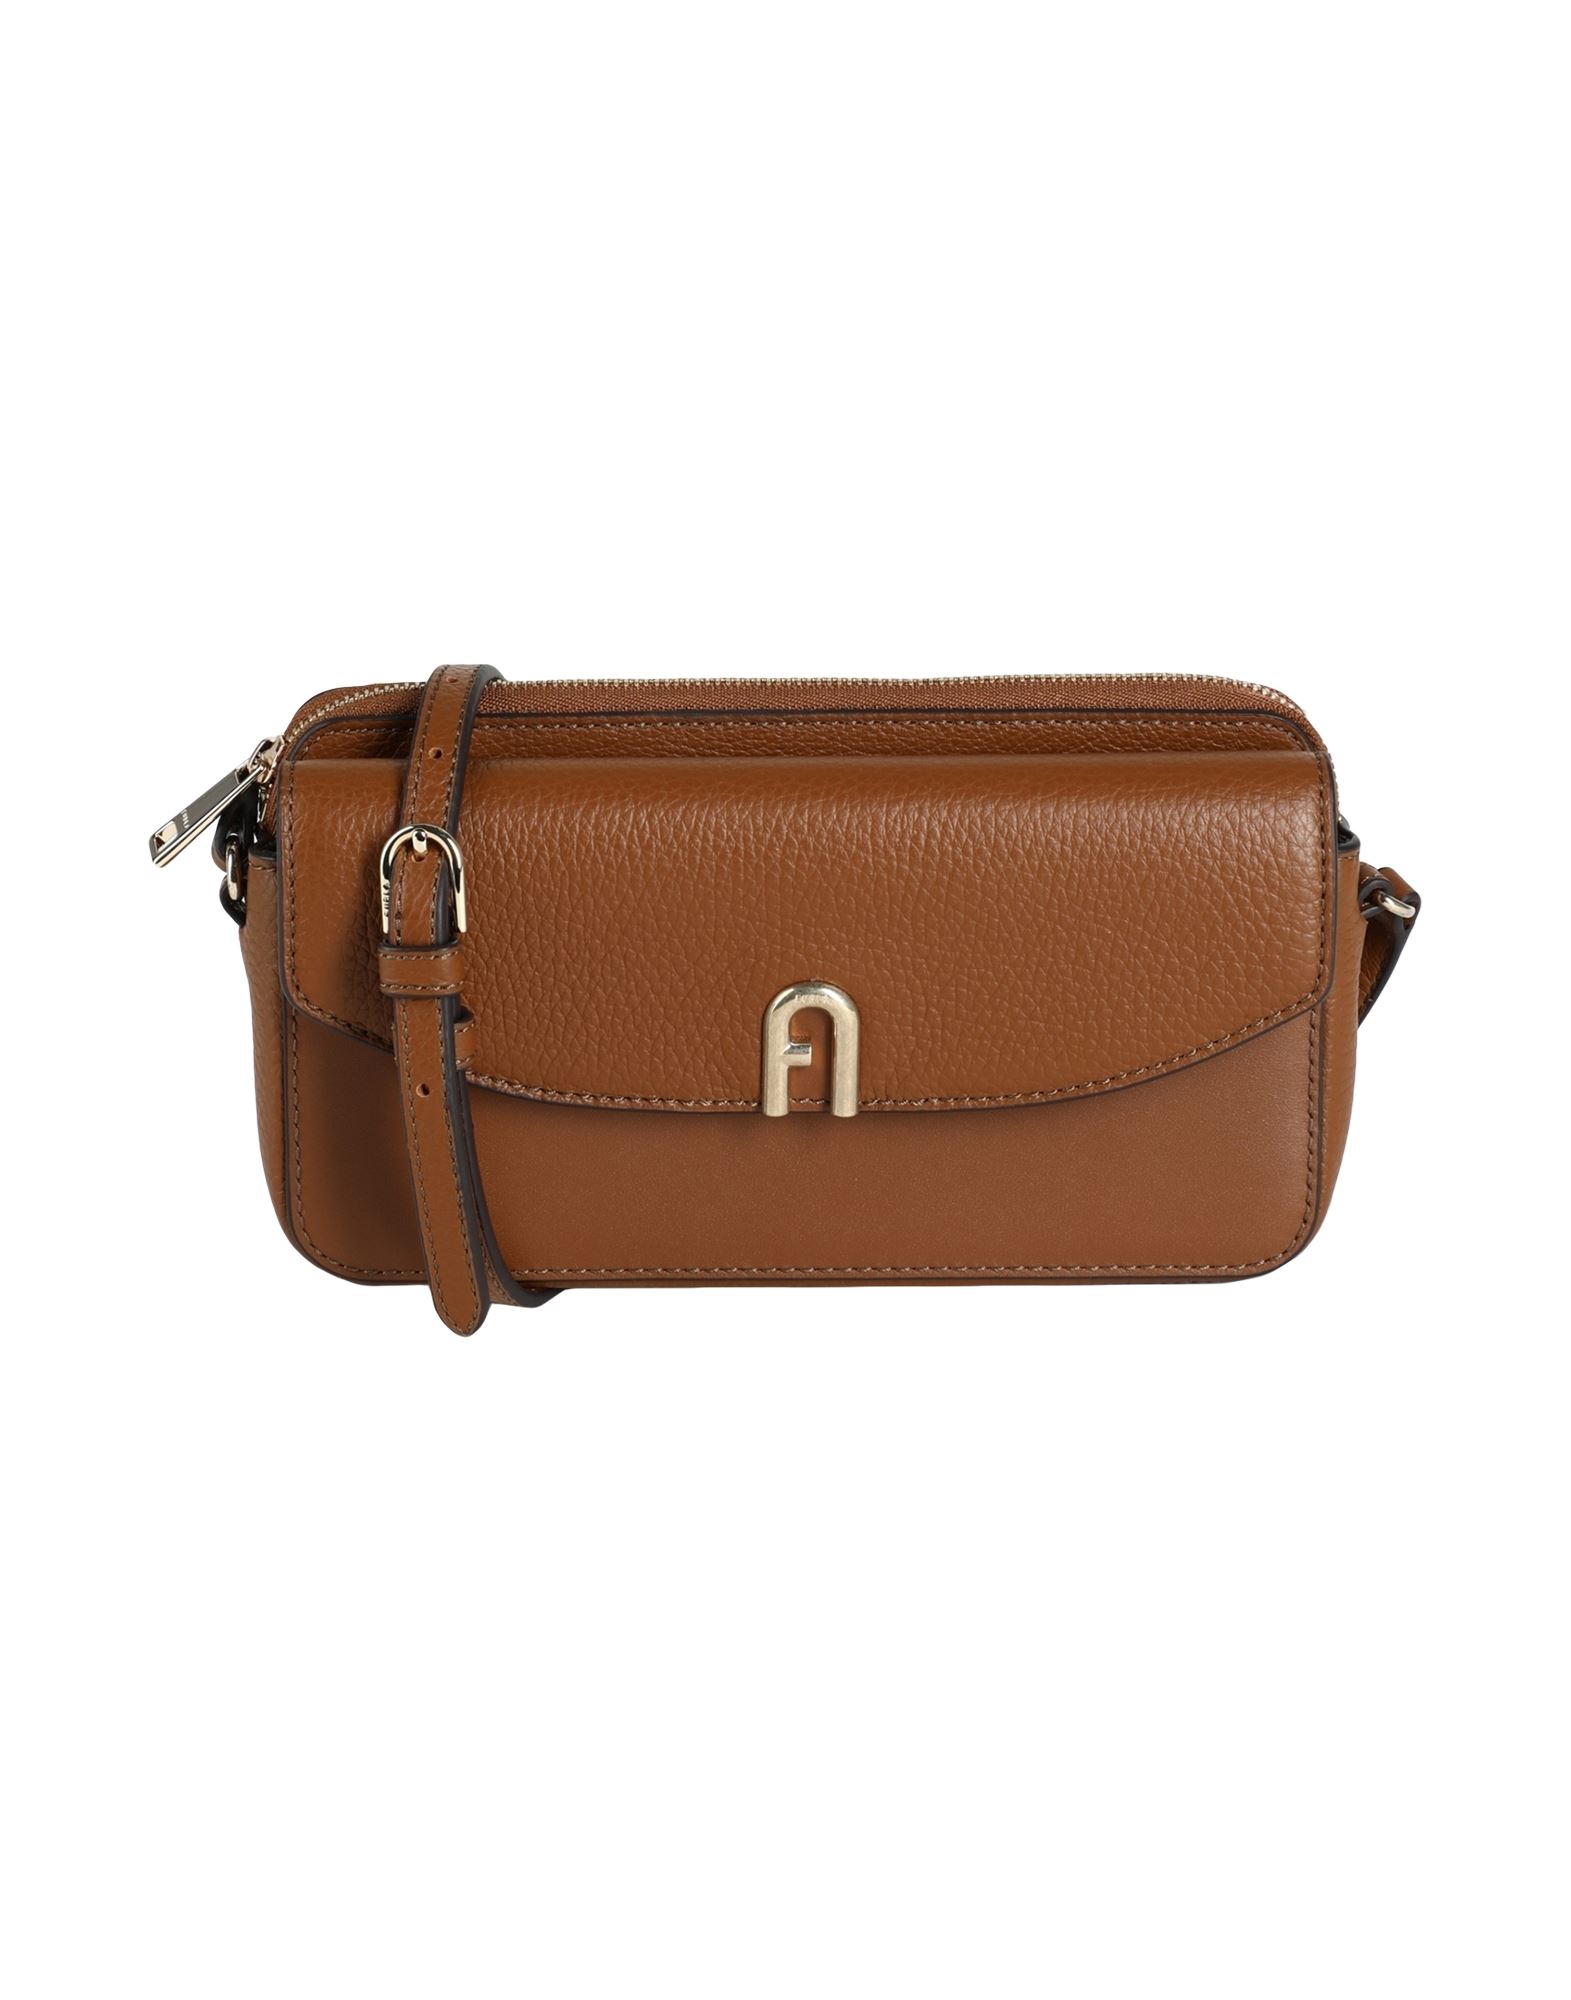 Furla Handbags In Brown